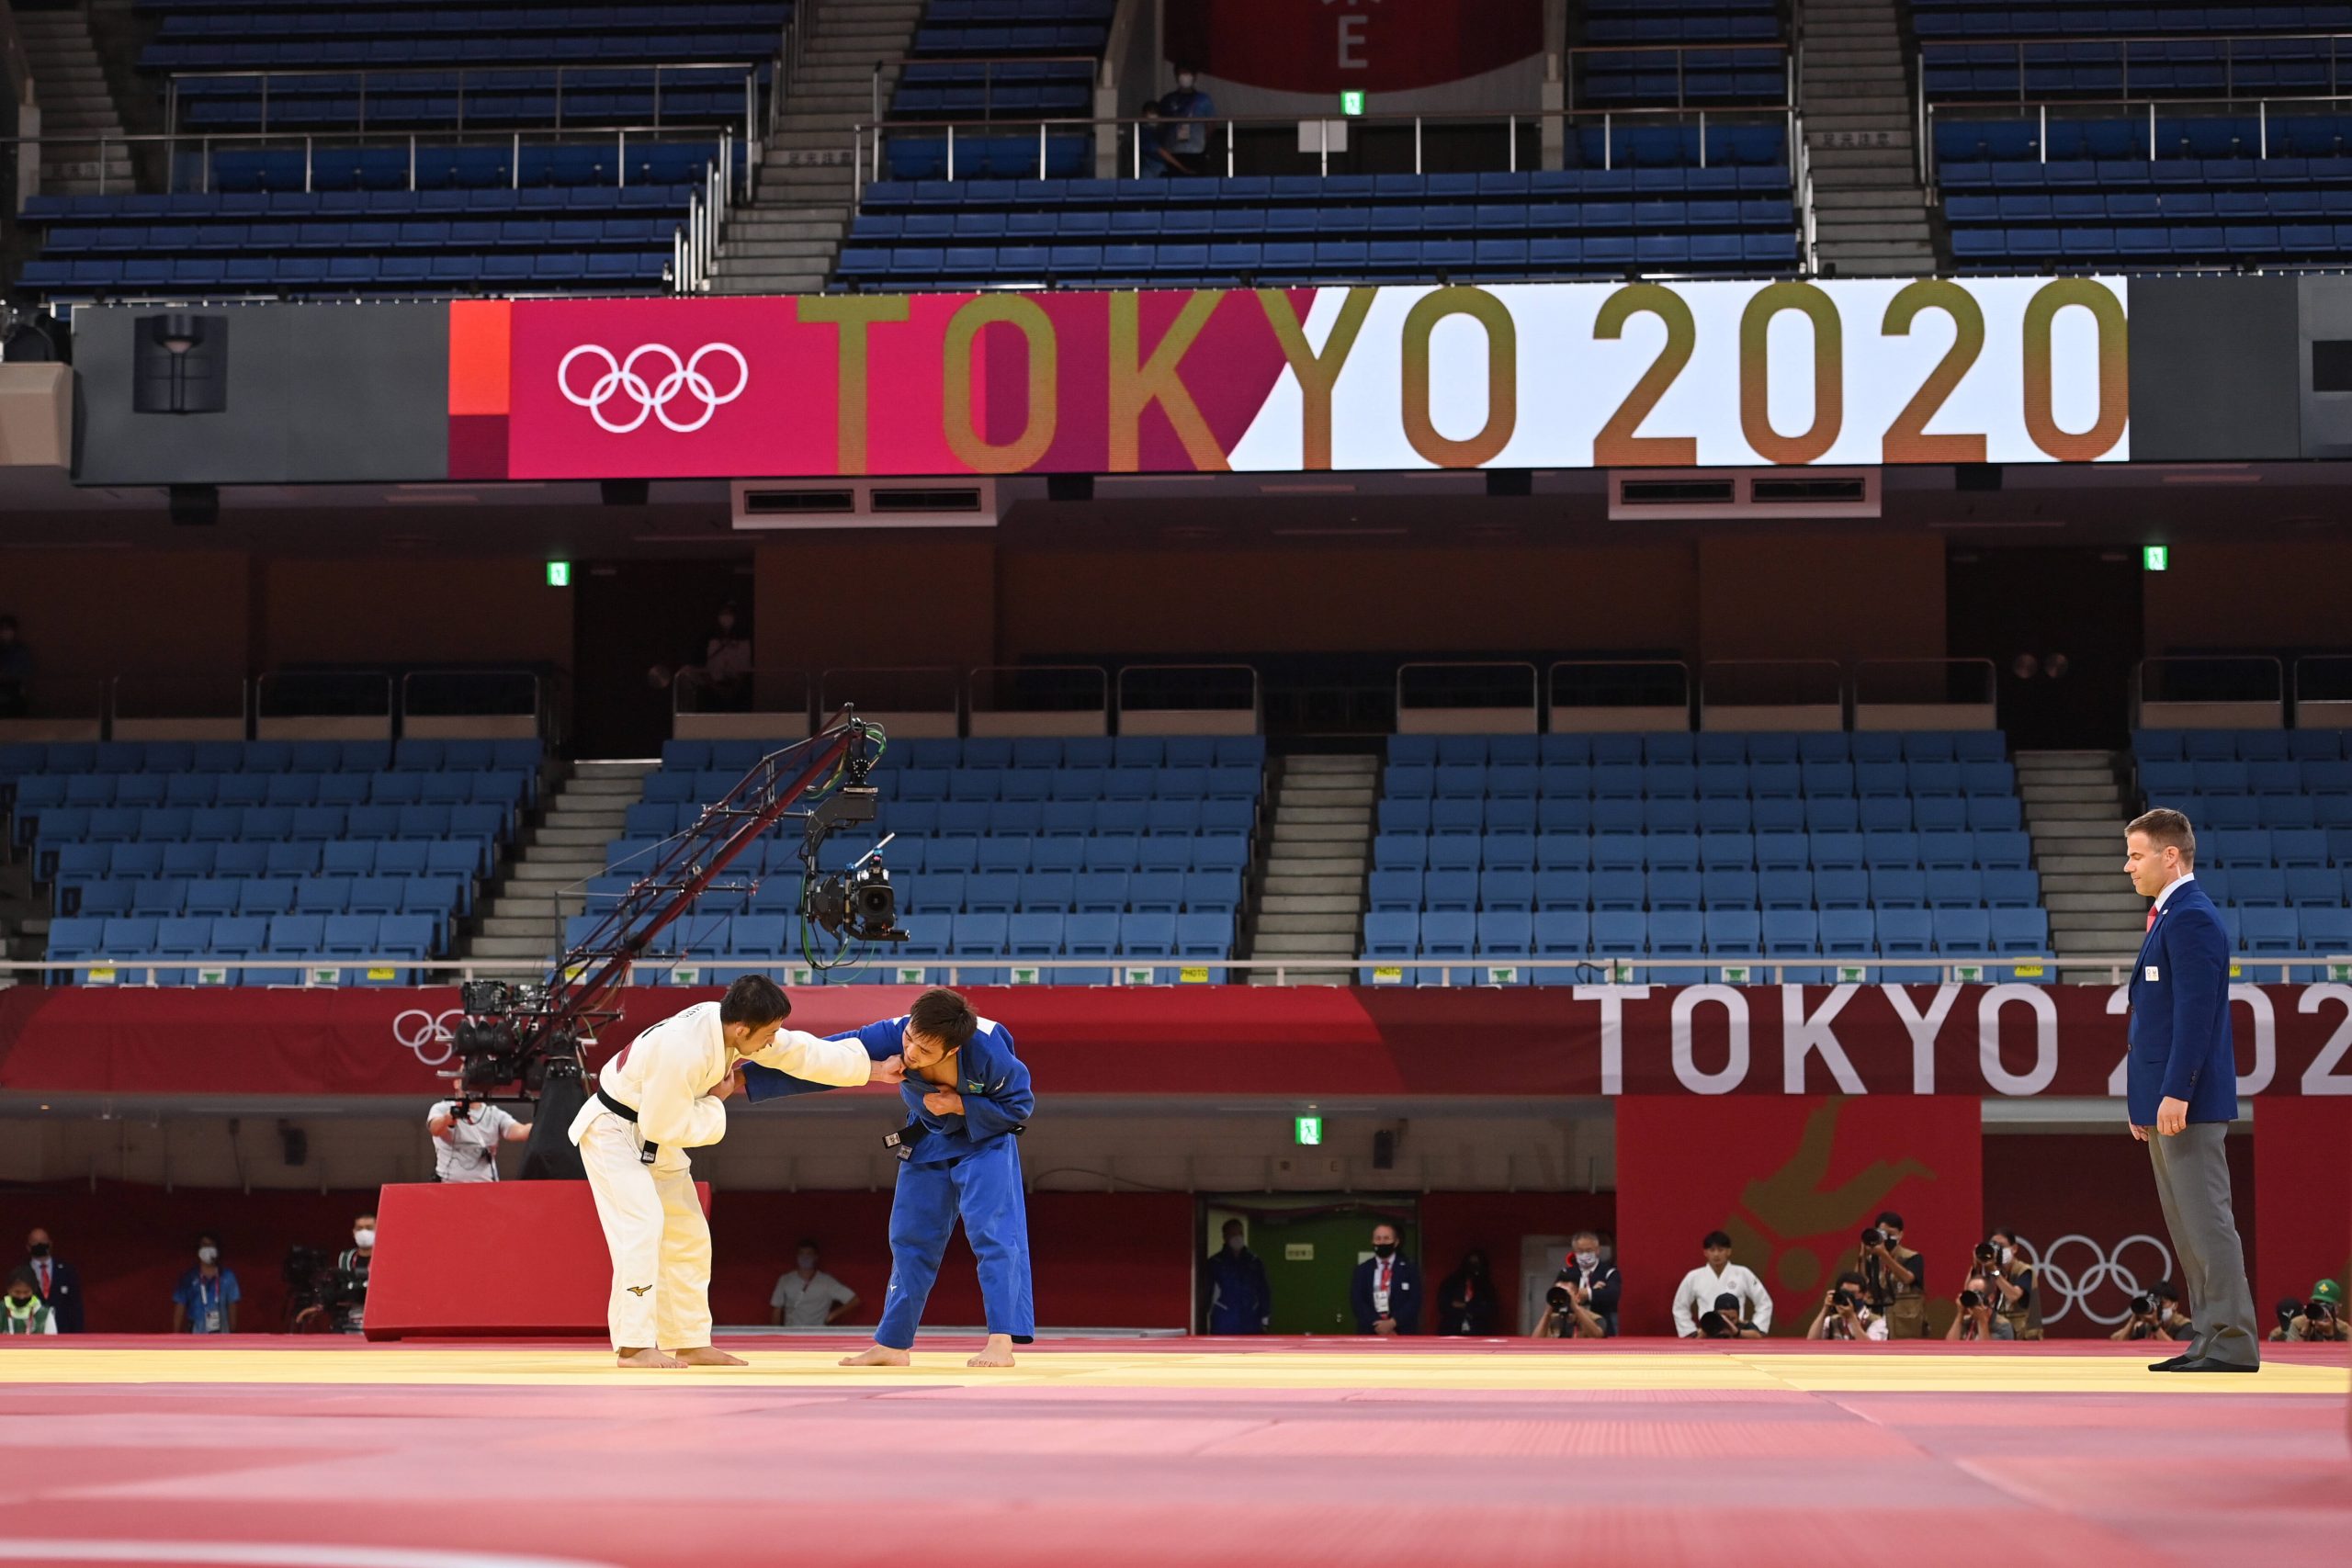 Judoka Olympia